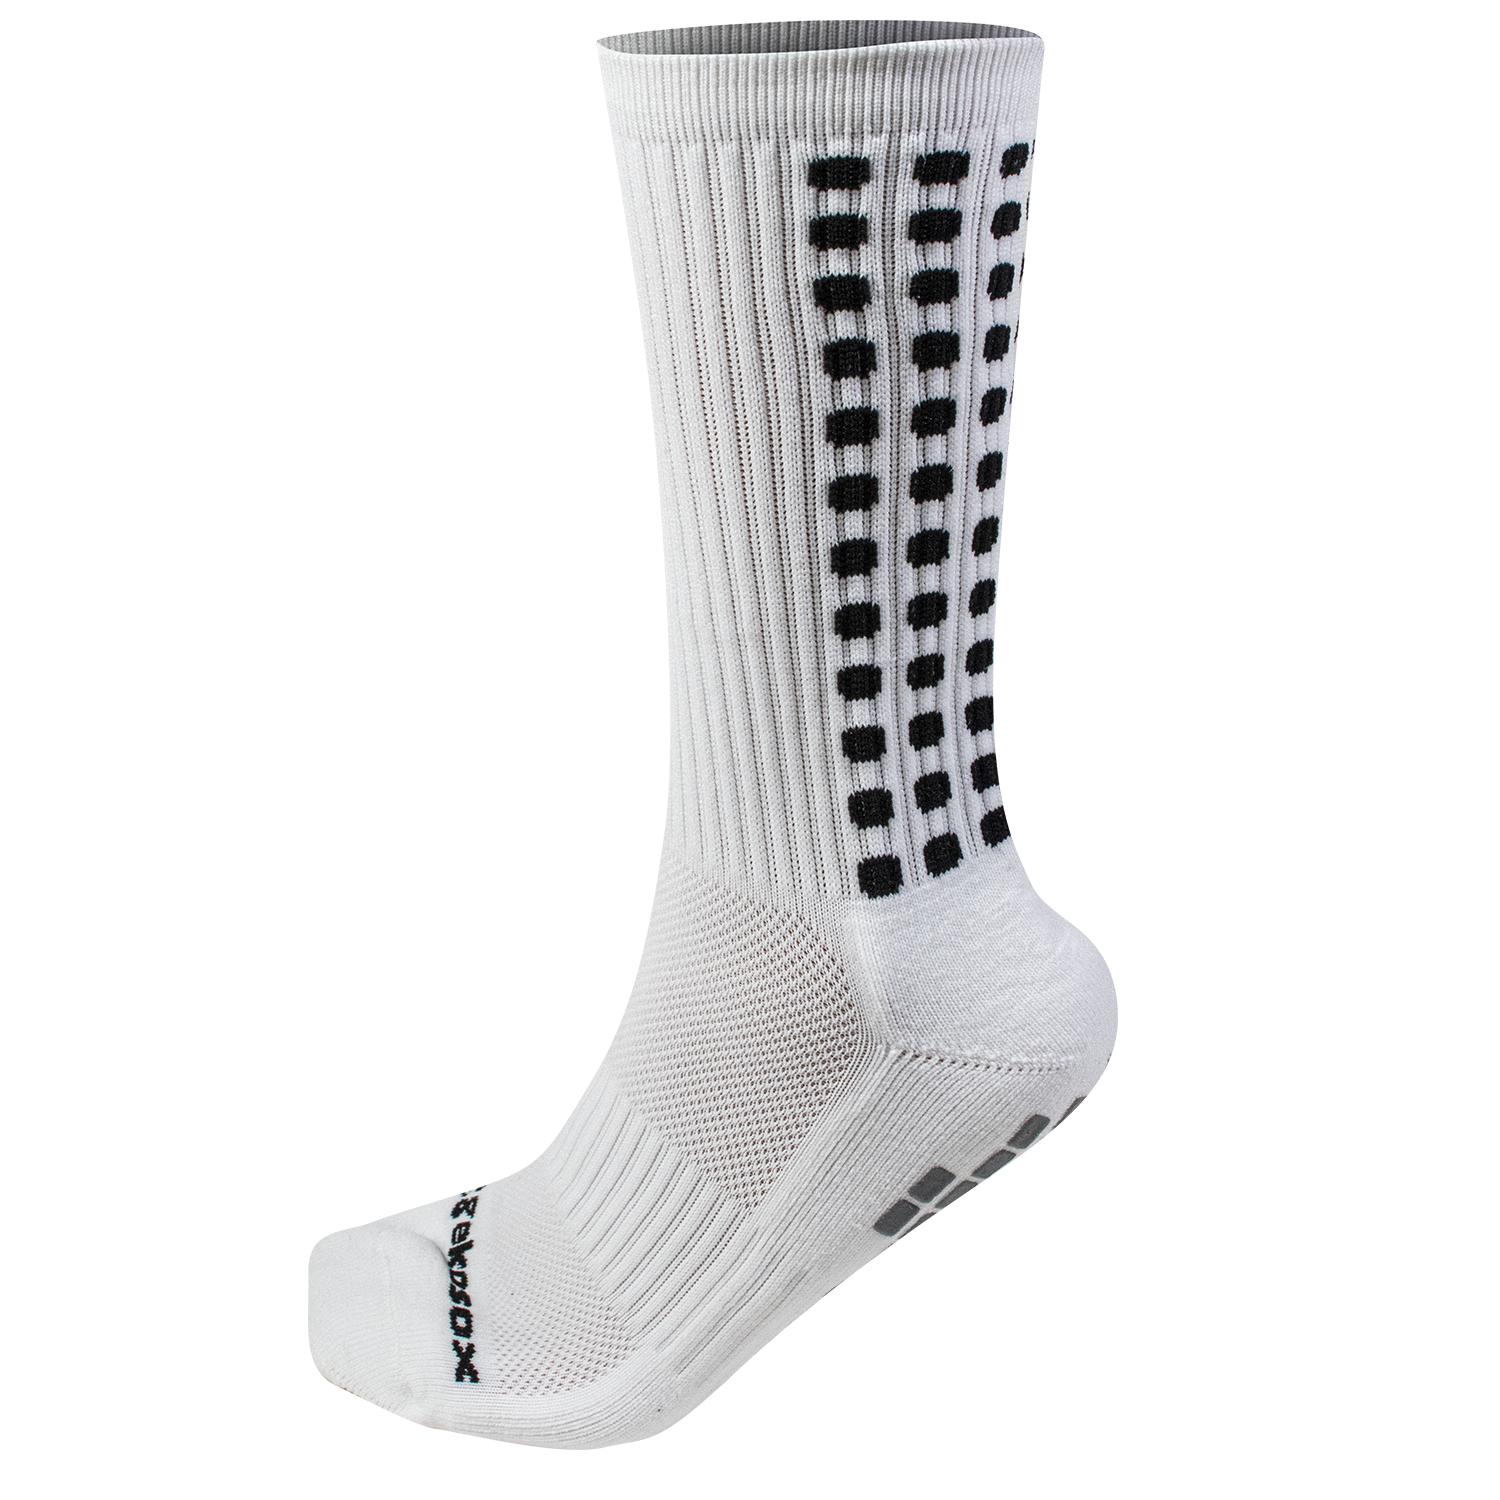 Grip Socks by Gekosox 9